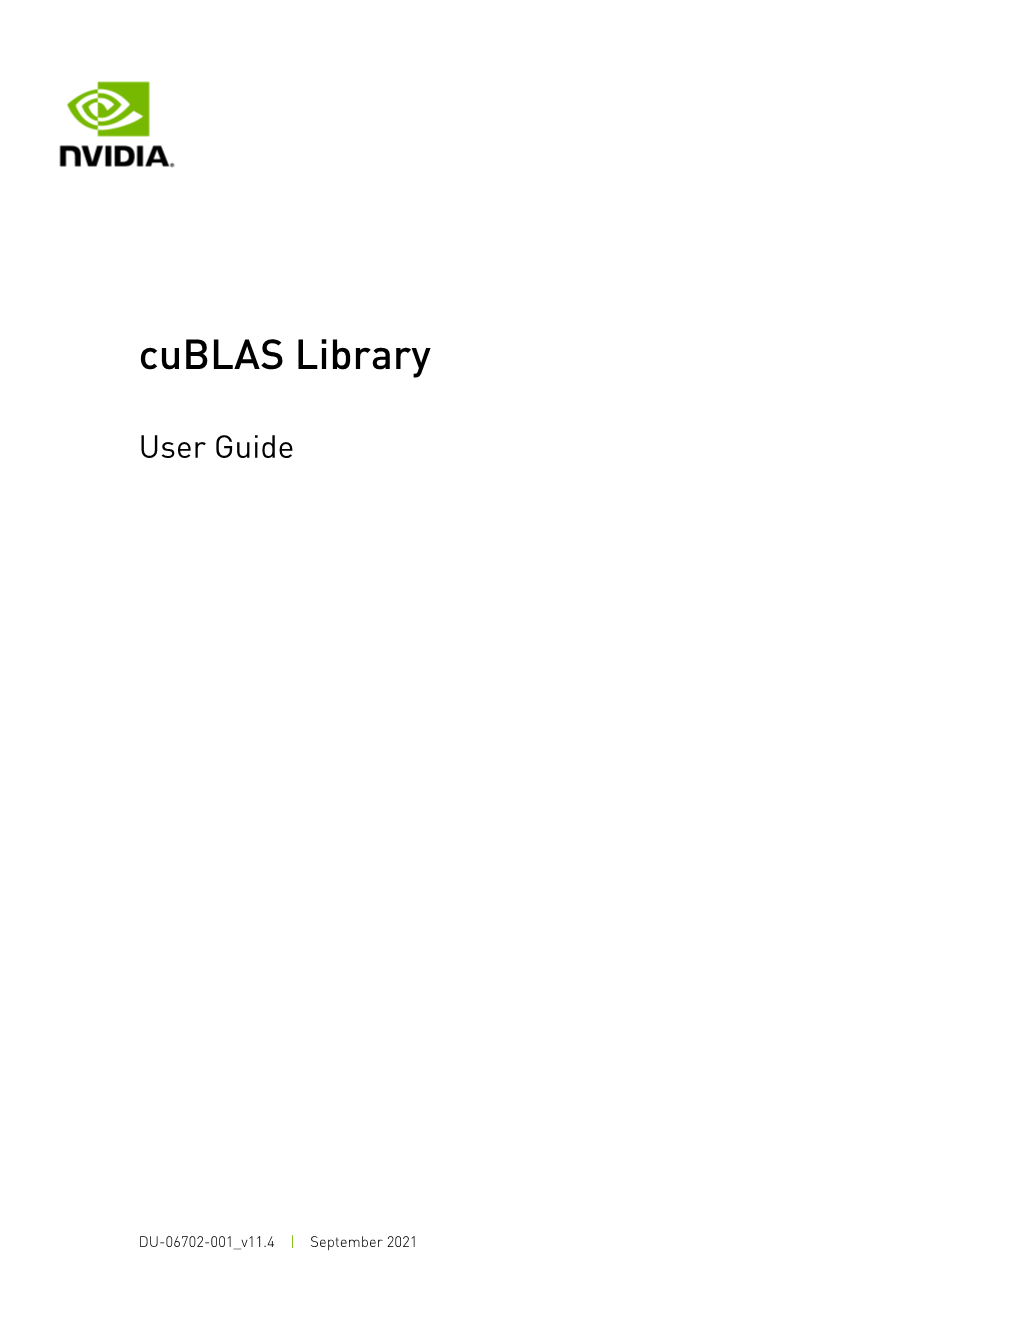 Cublas Library